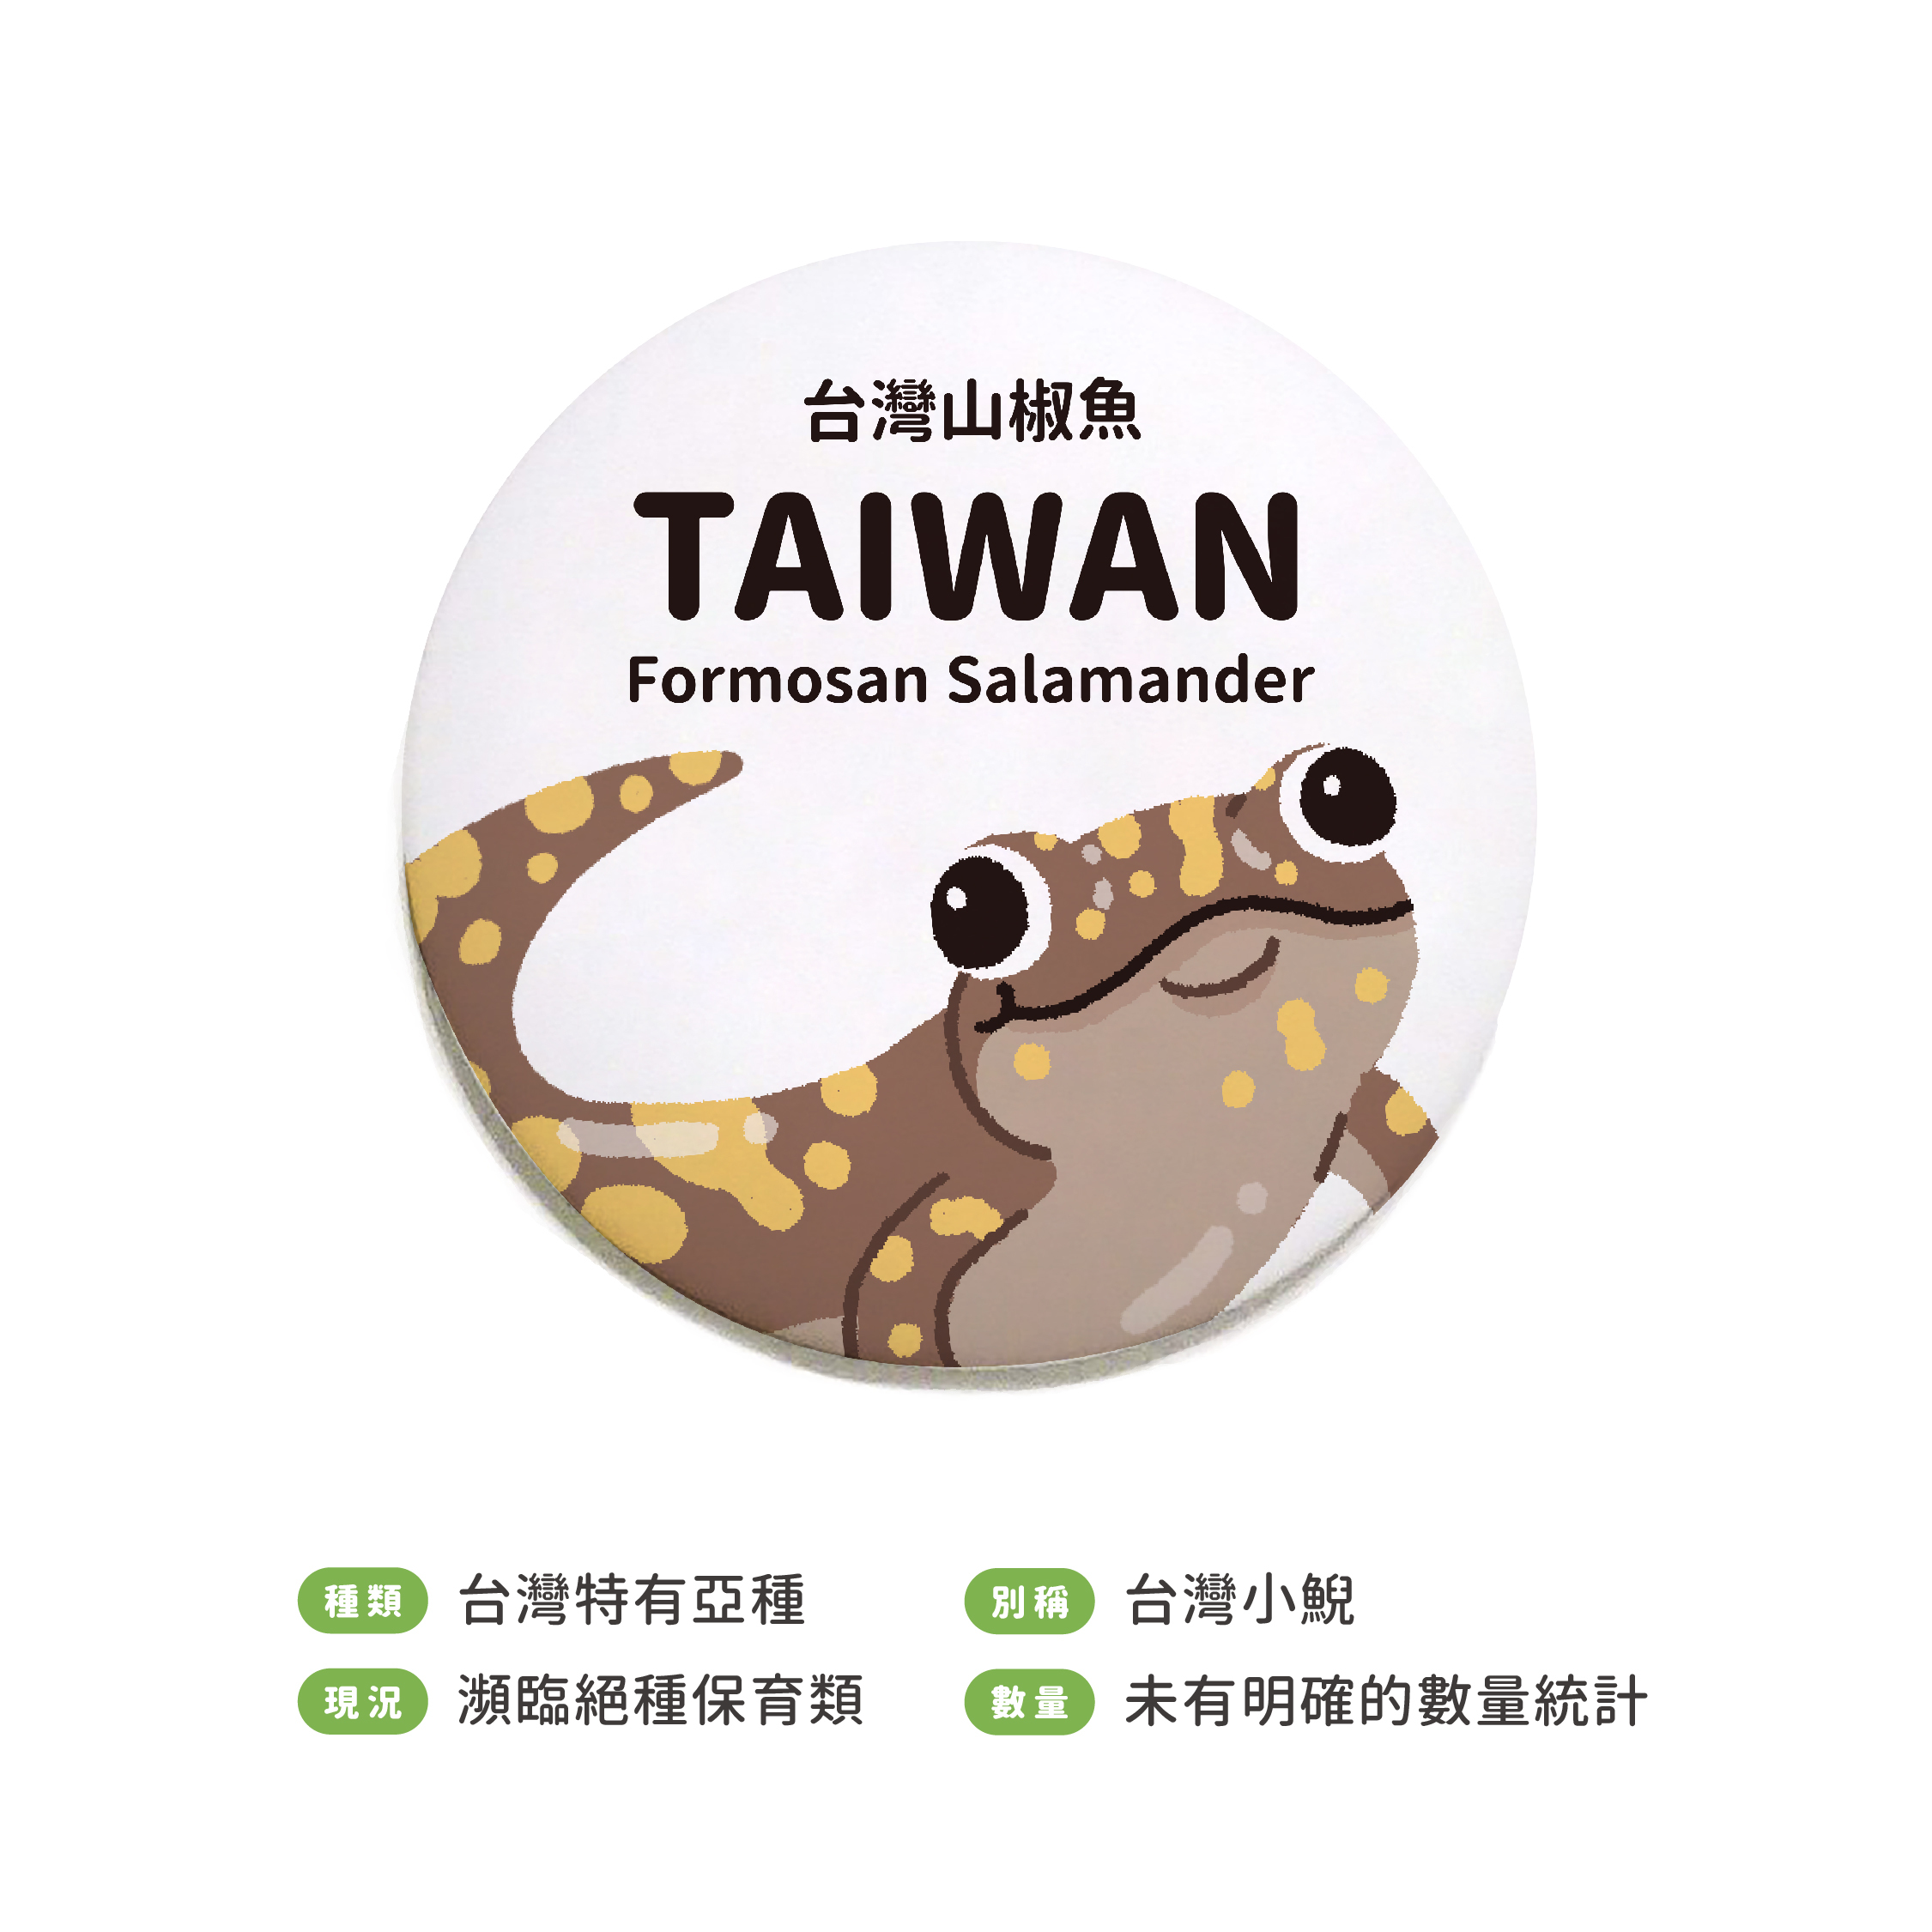 窩胸章2 0 我們都來自台灣 台灣瀕危物種篇 追加物種英文名稱